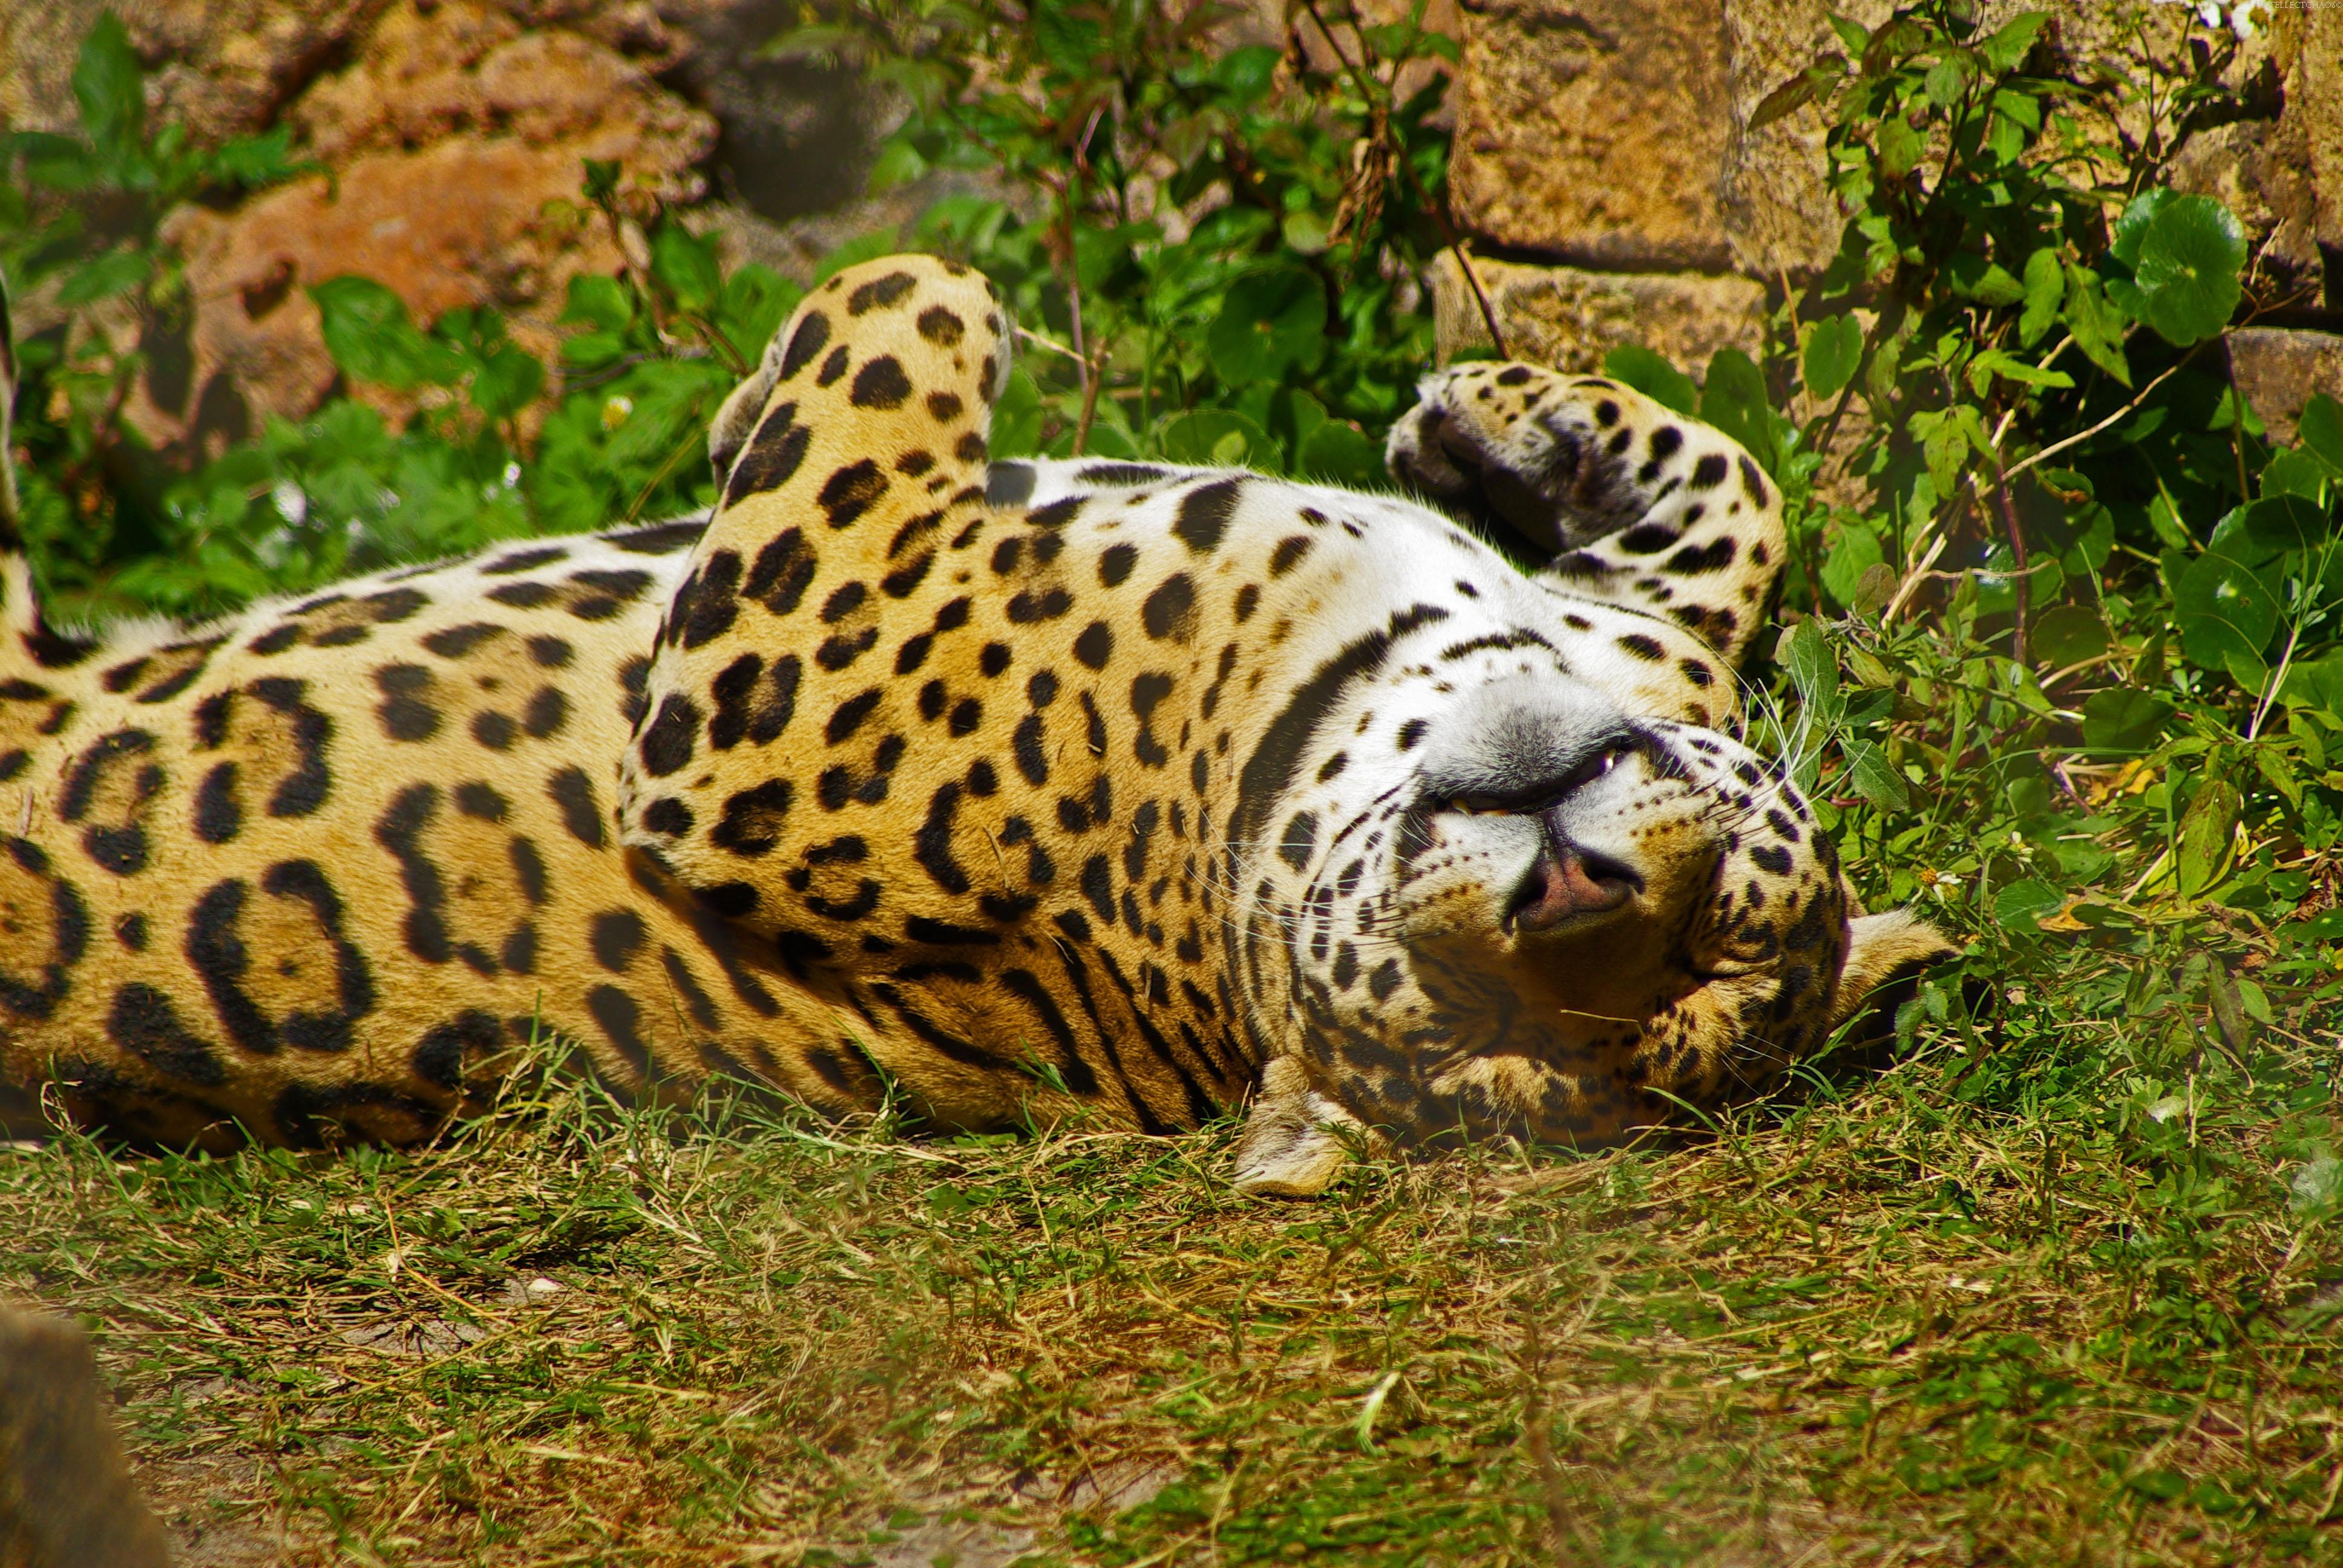 Jaguar is resting